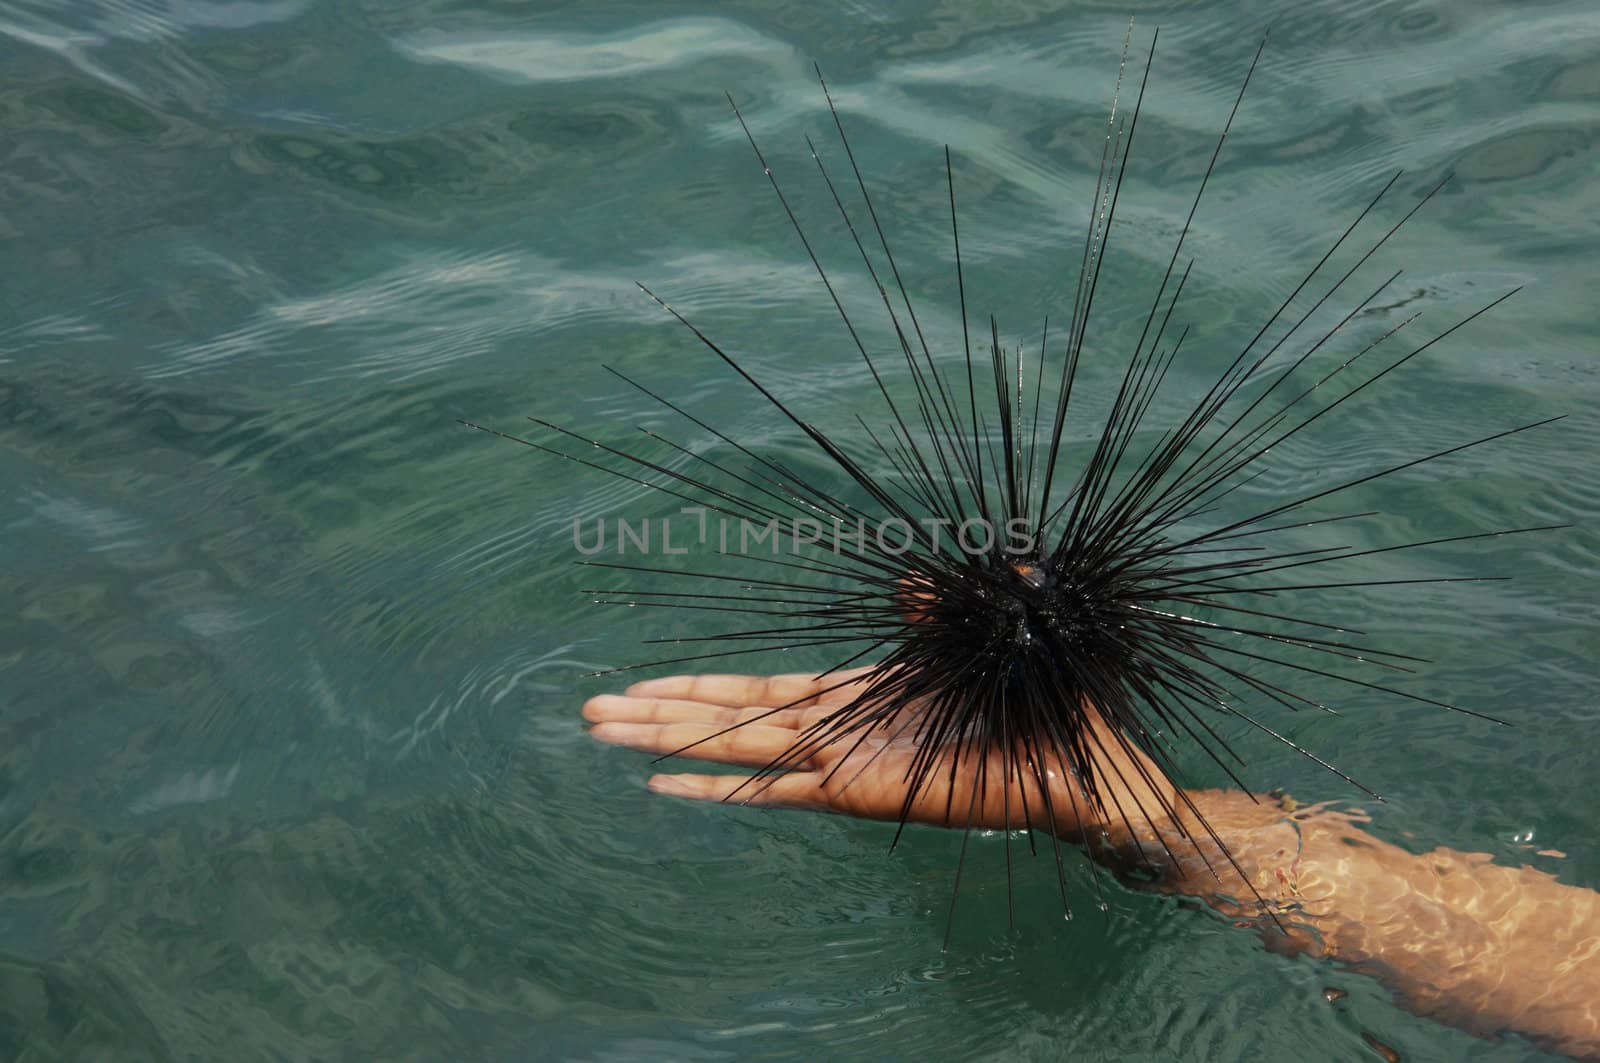 Sea Urchin in the sea.